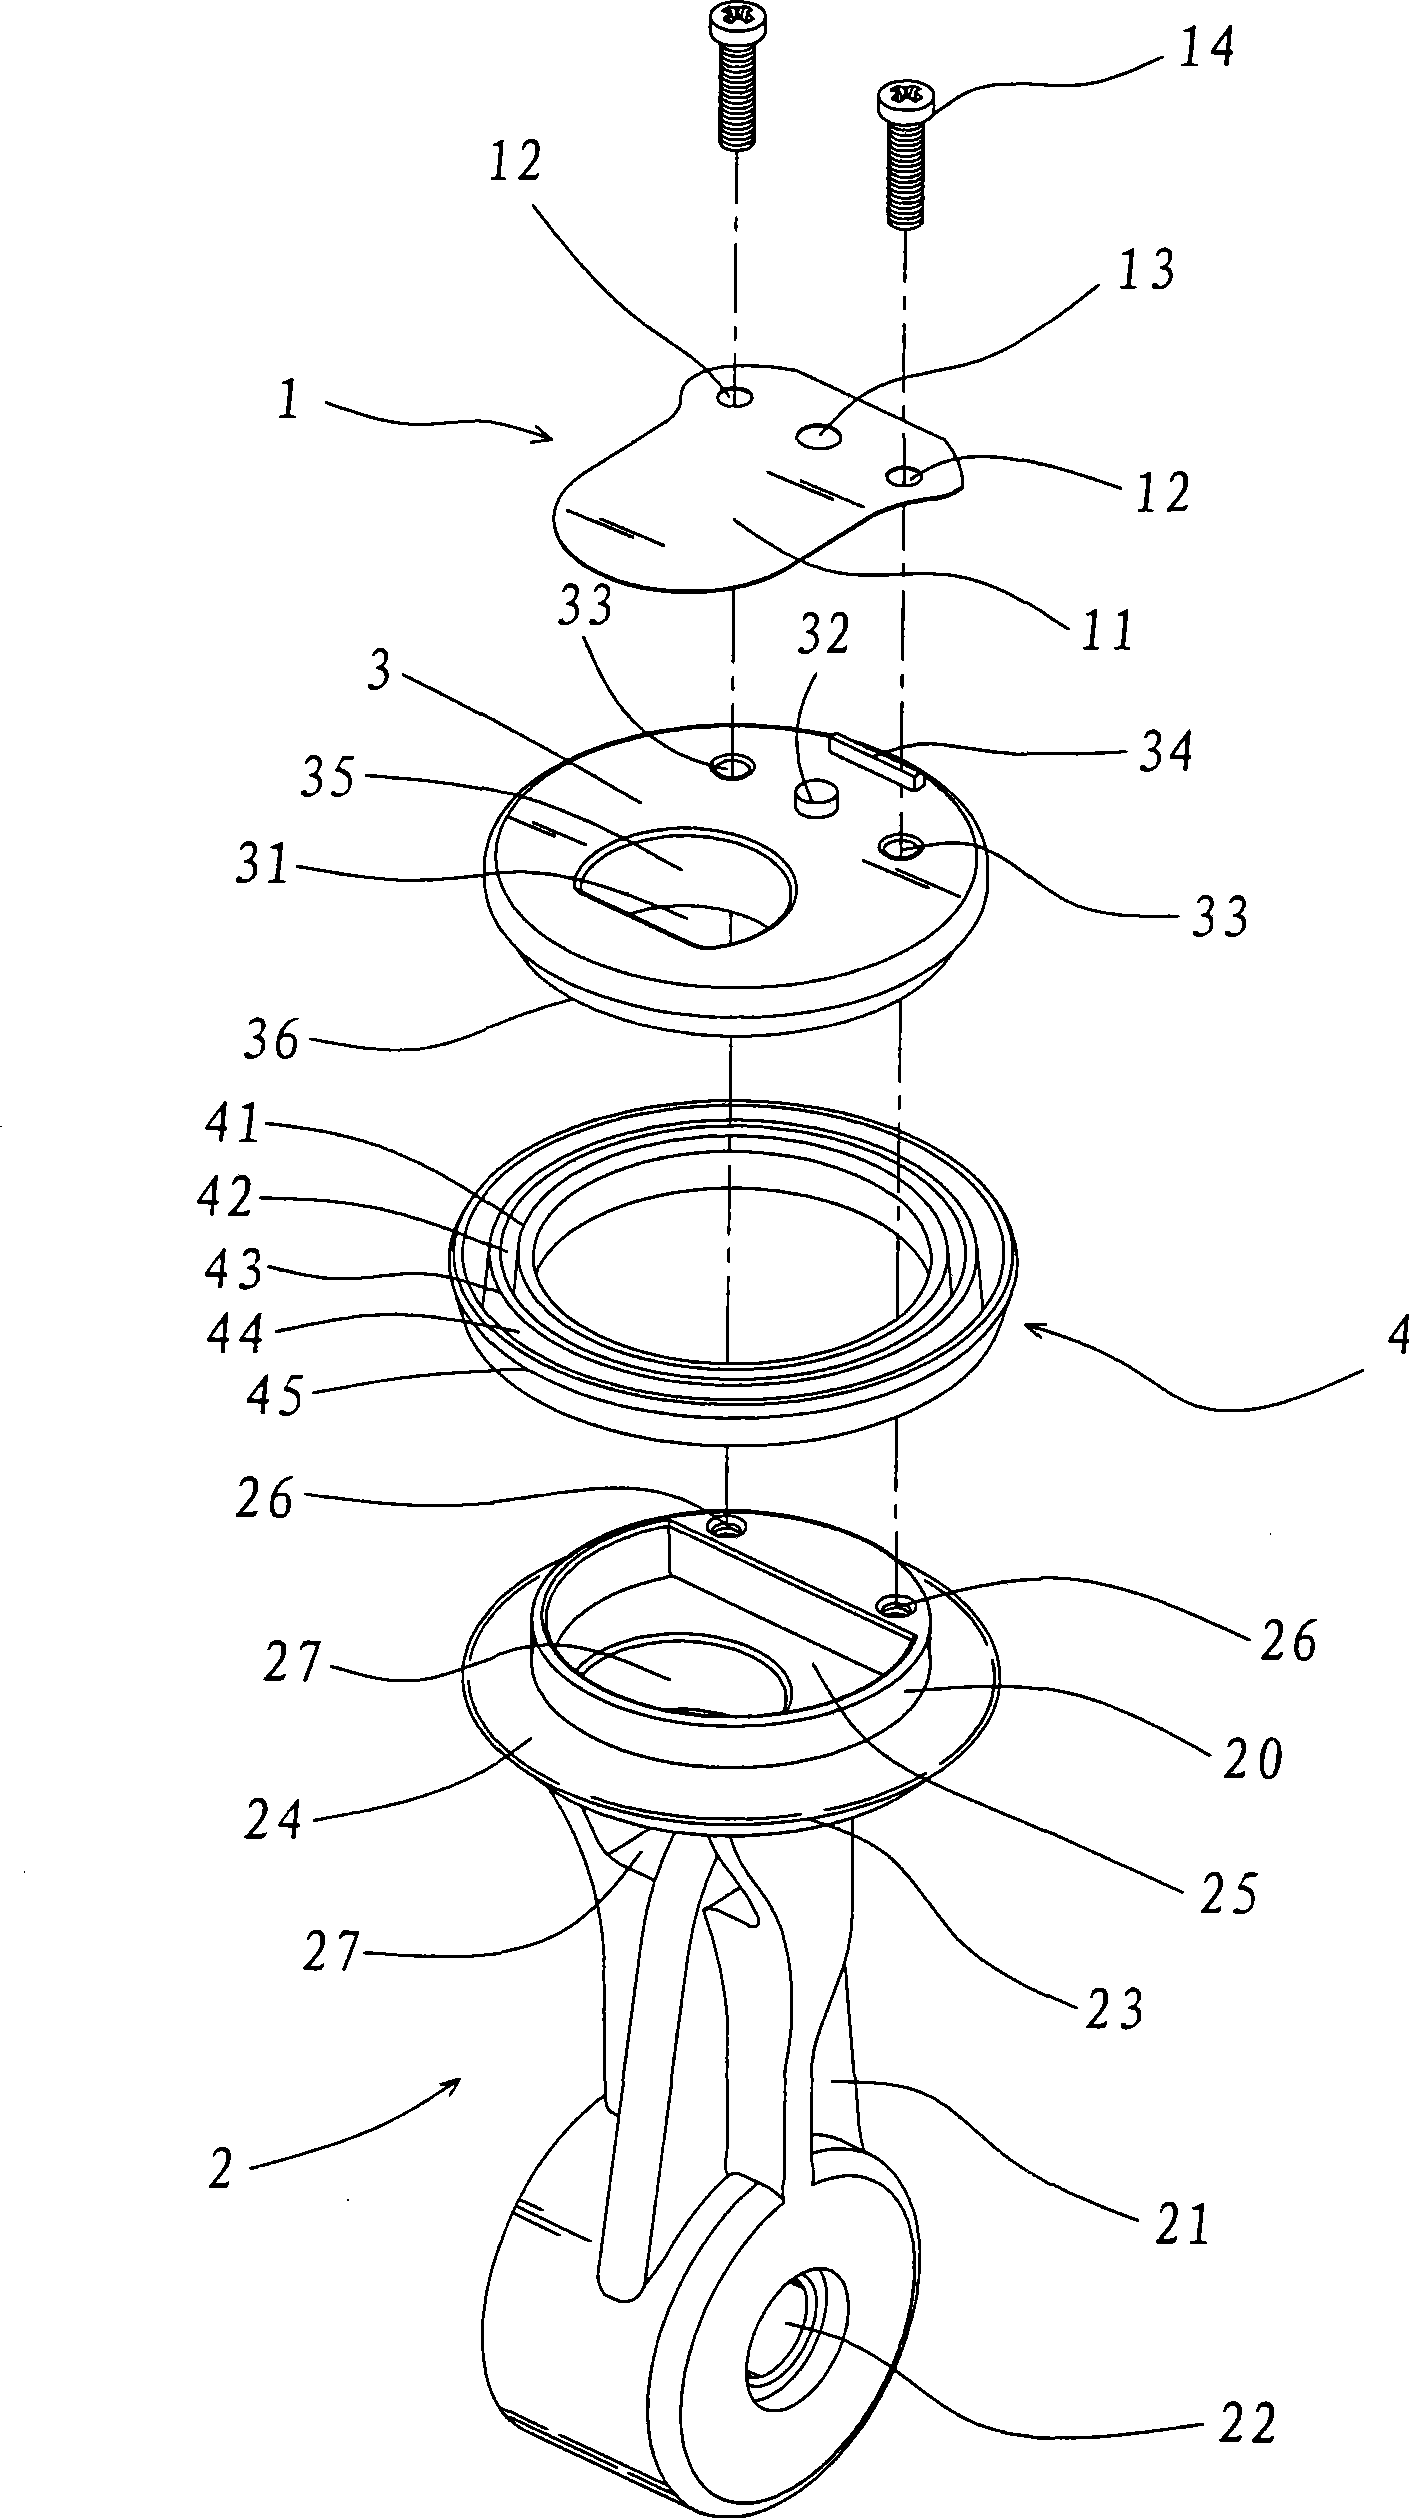 Piston body structure of air compressor